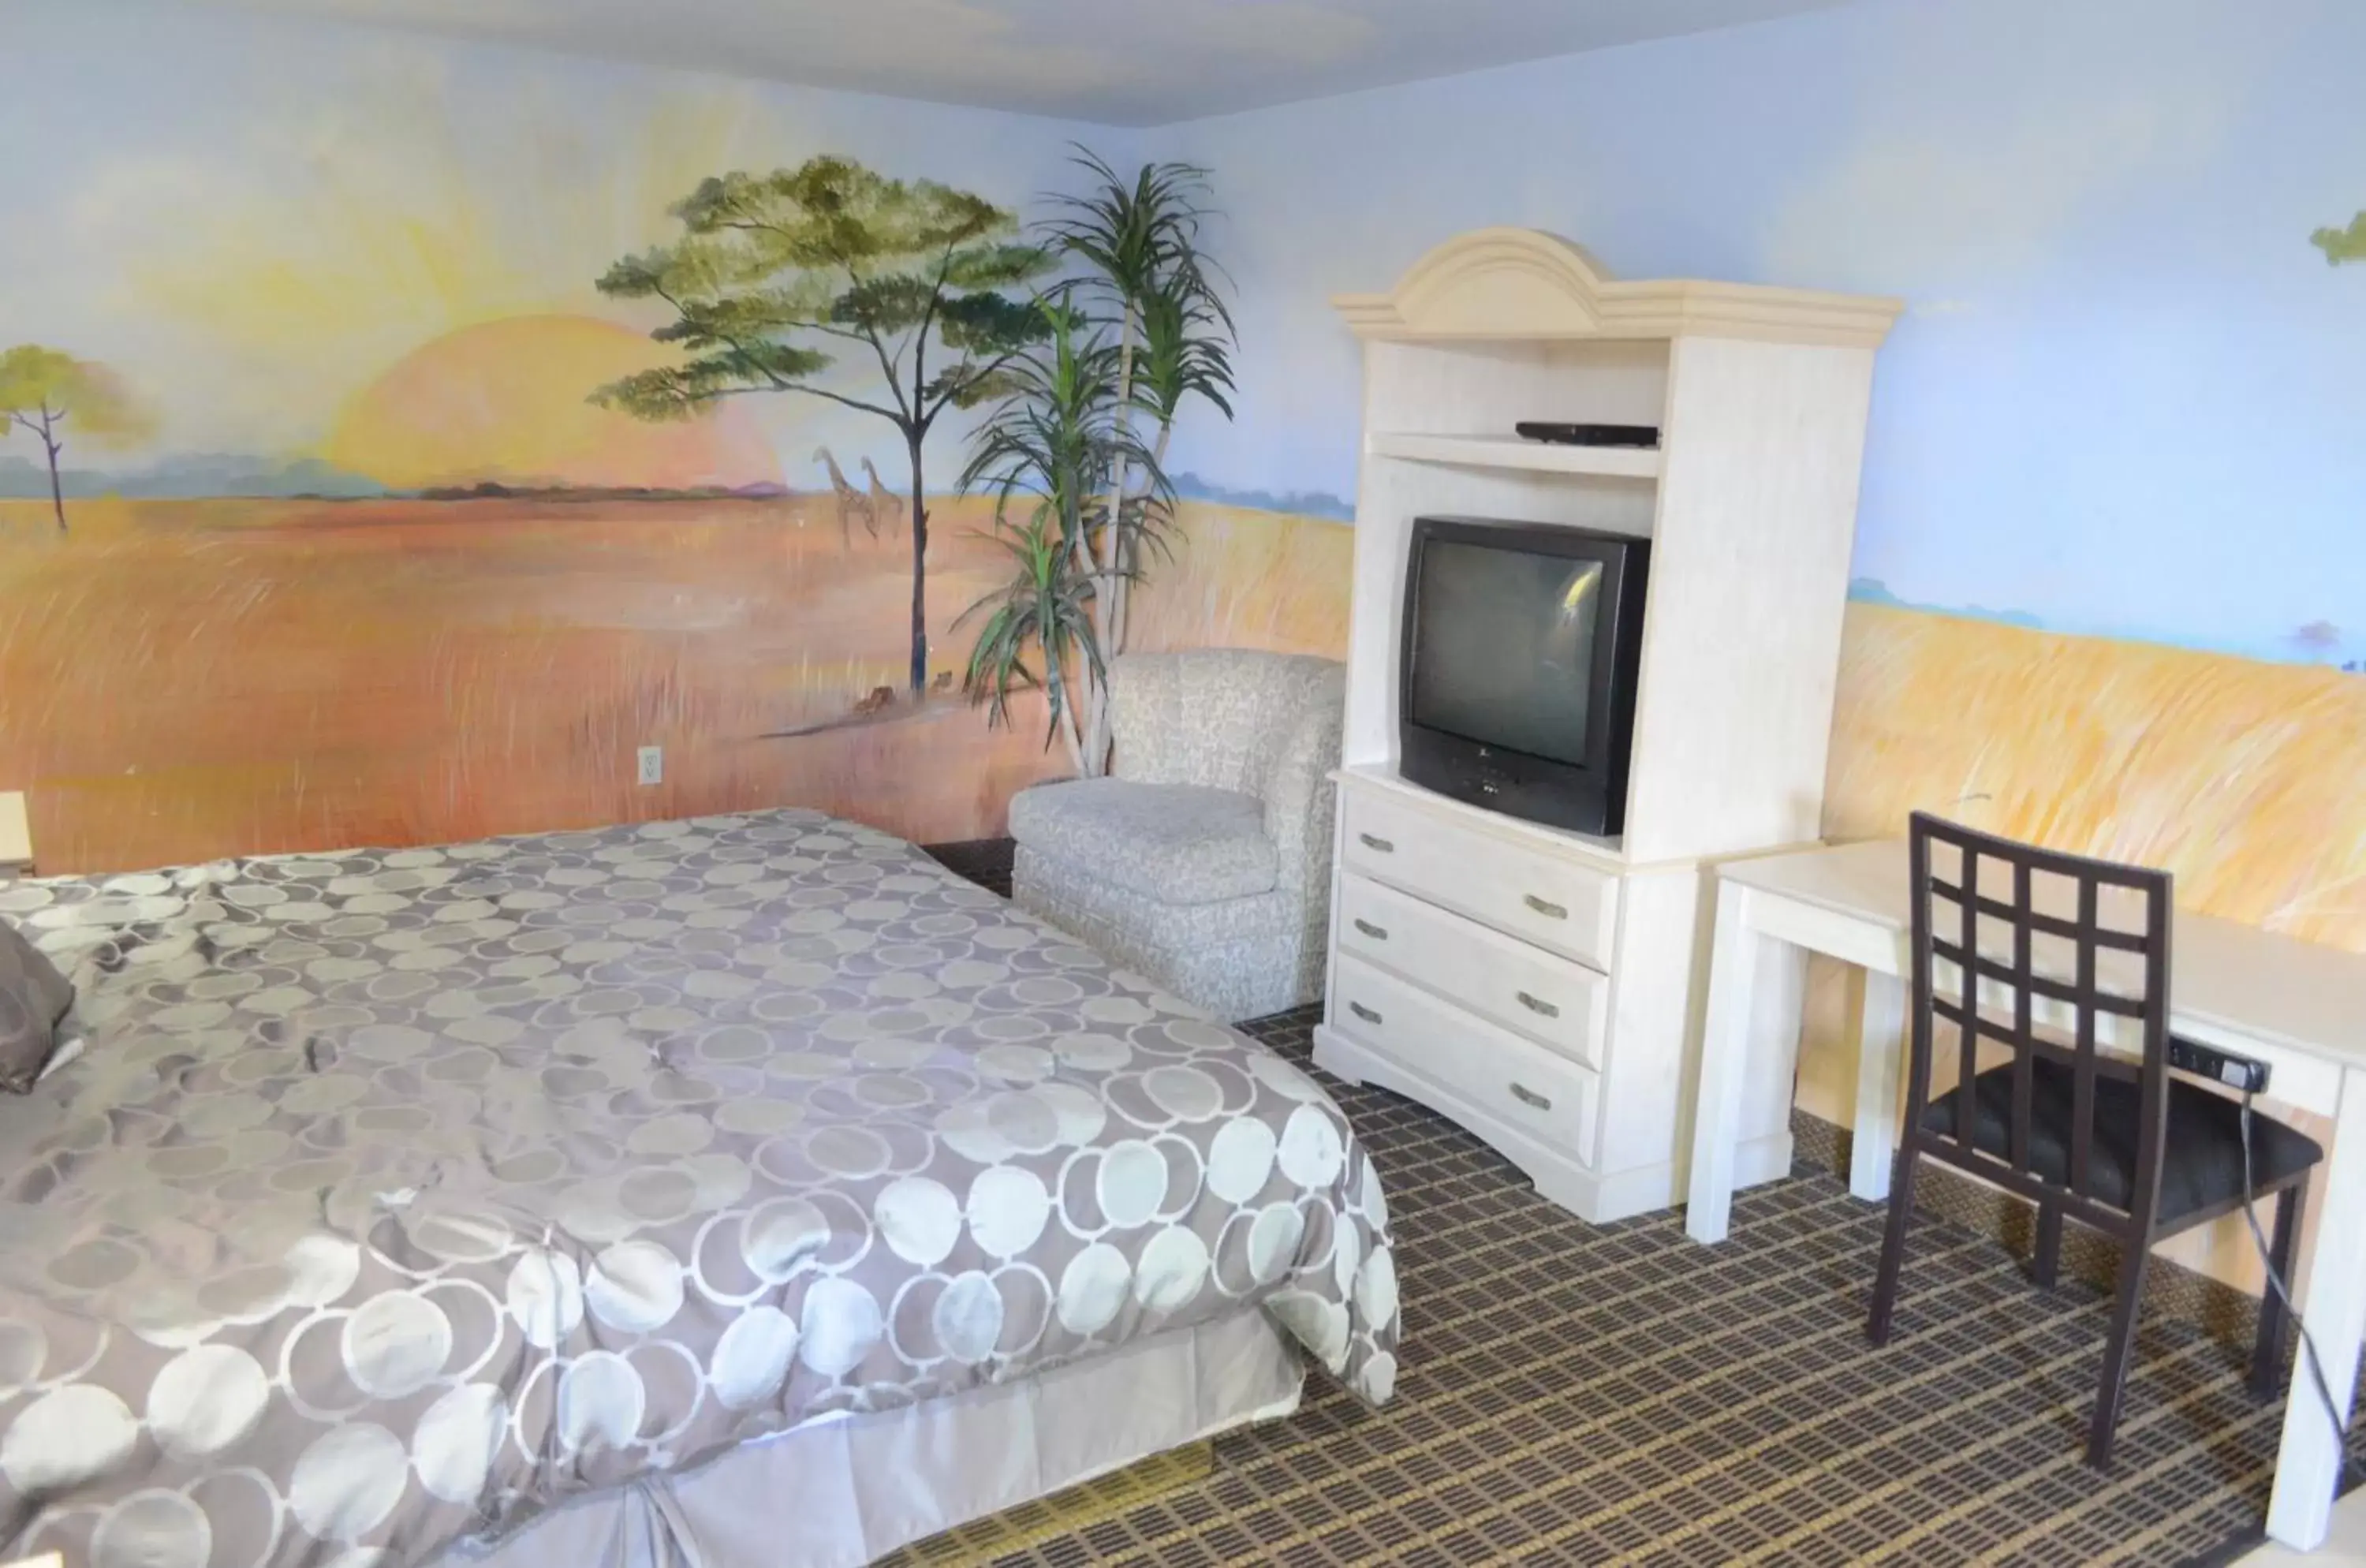 Bedroom, TV/Entertainment Center in Scottish Inn and Suites NRG Park/Texas Medical Center - Houston